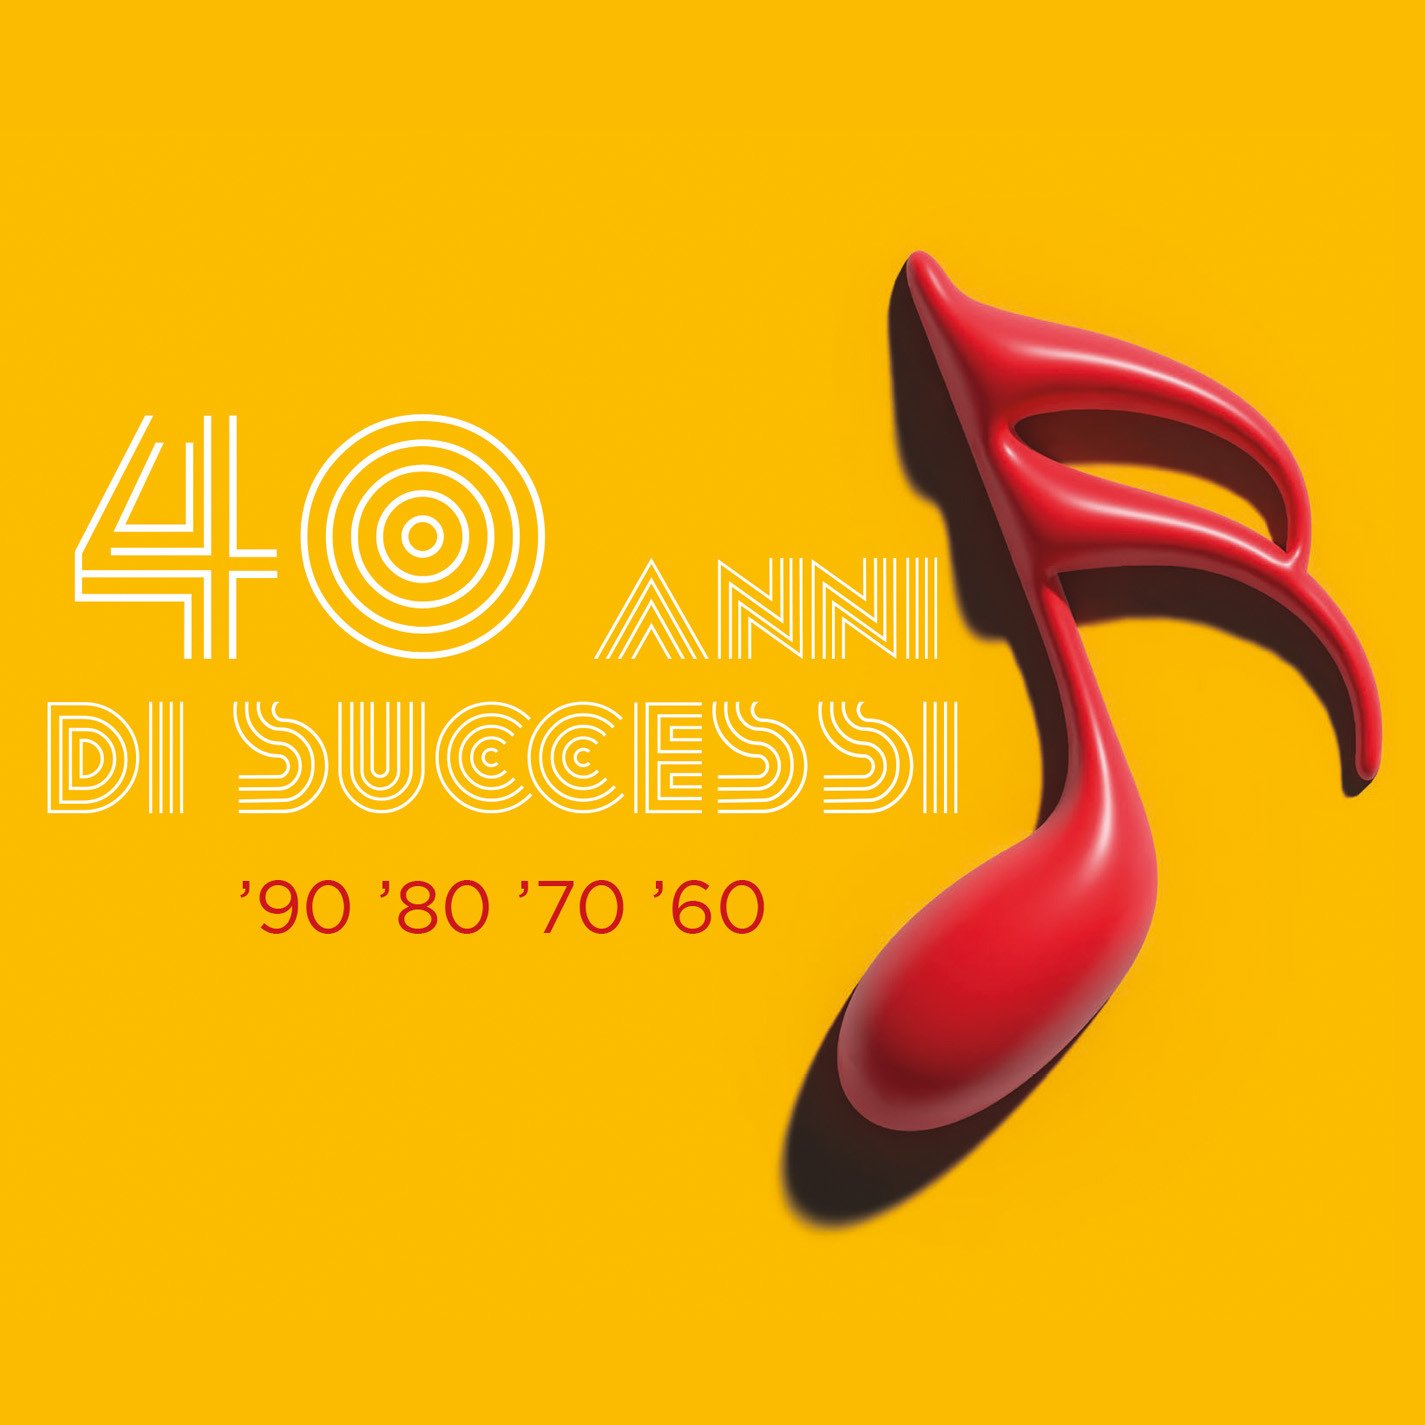 CD Shop - V/A 40 ANNI DI SUCCESSI (90-80-70-60)